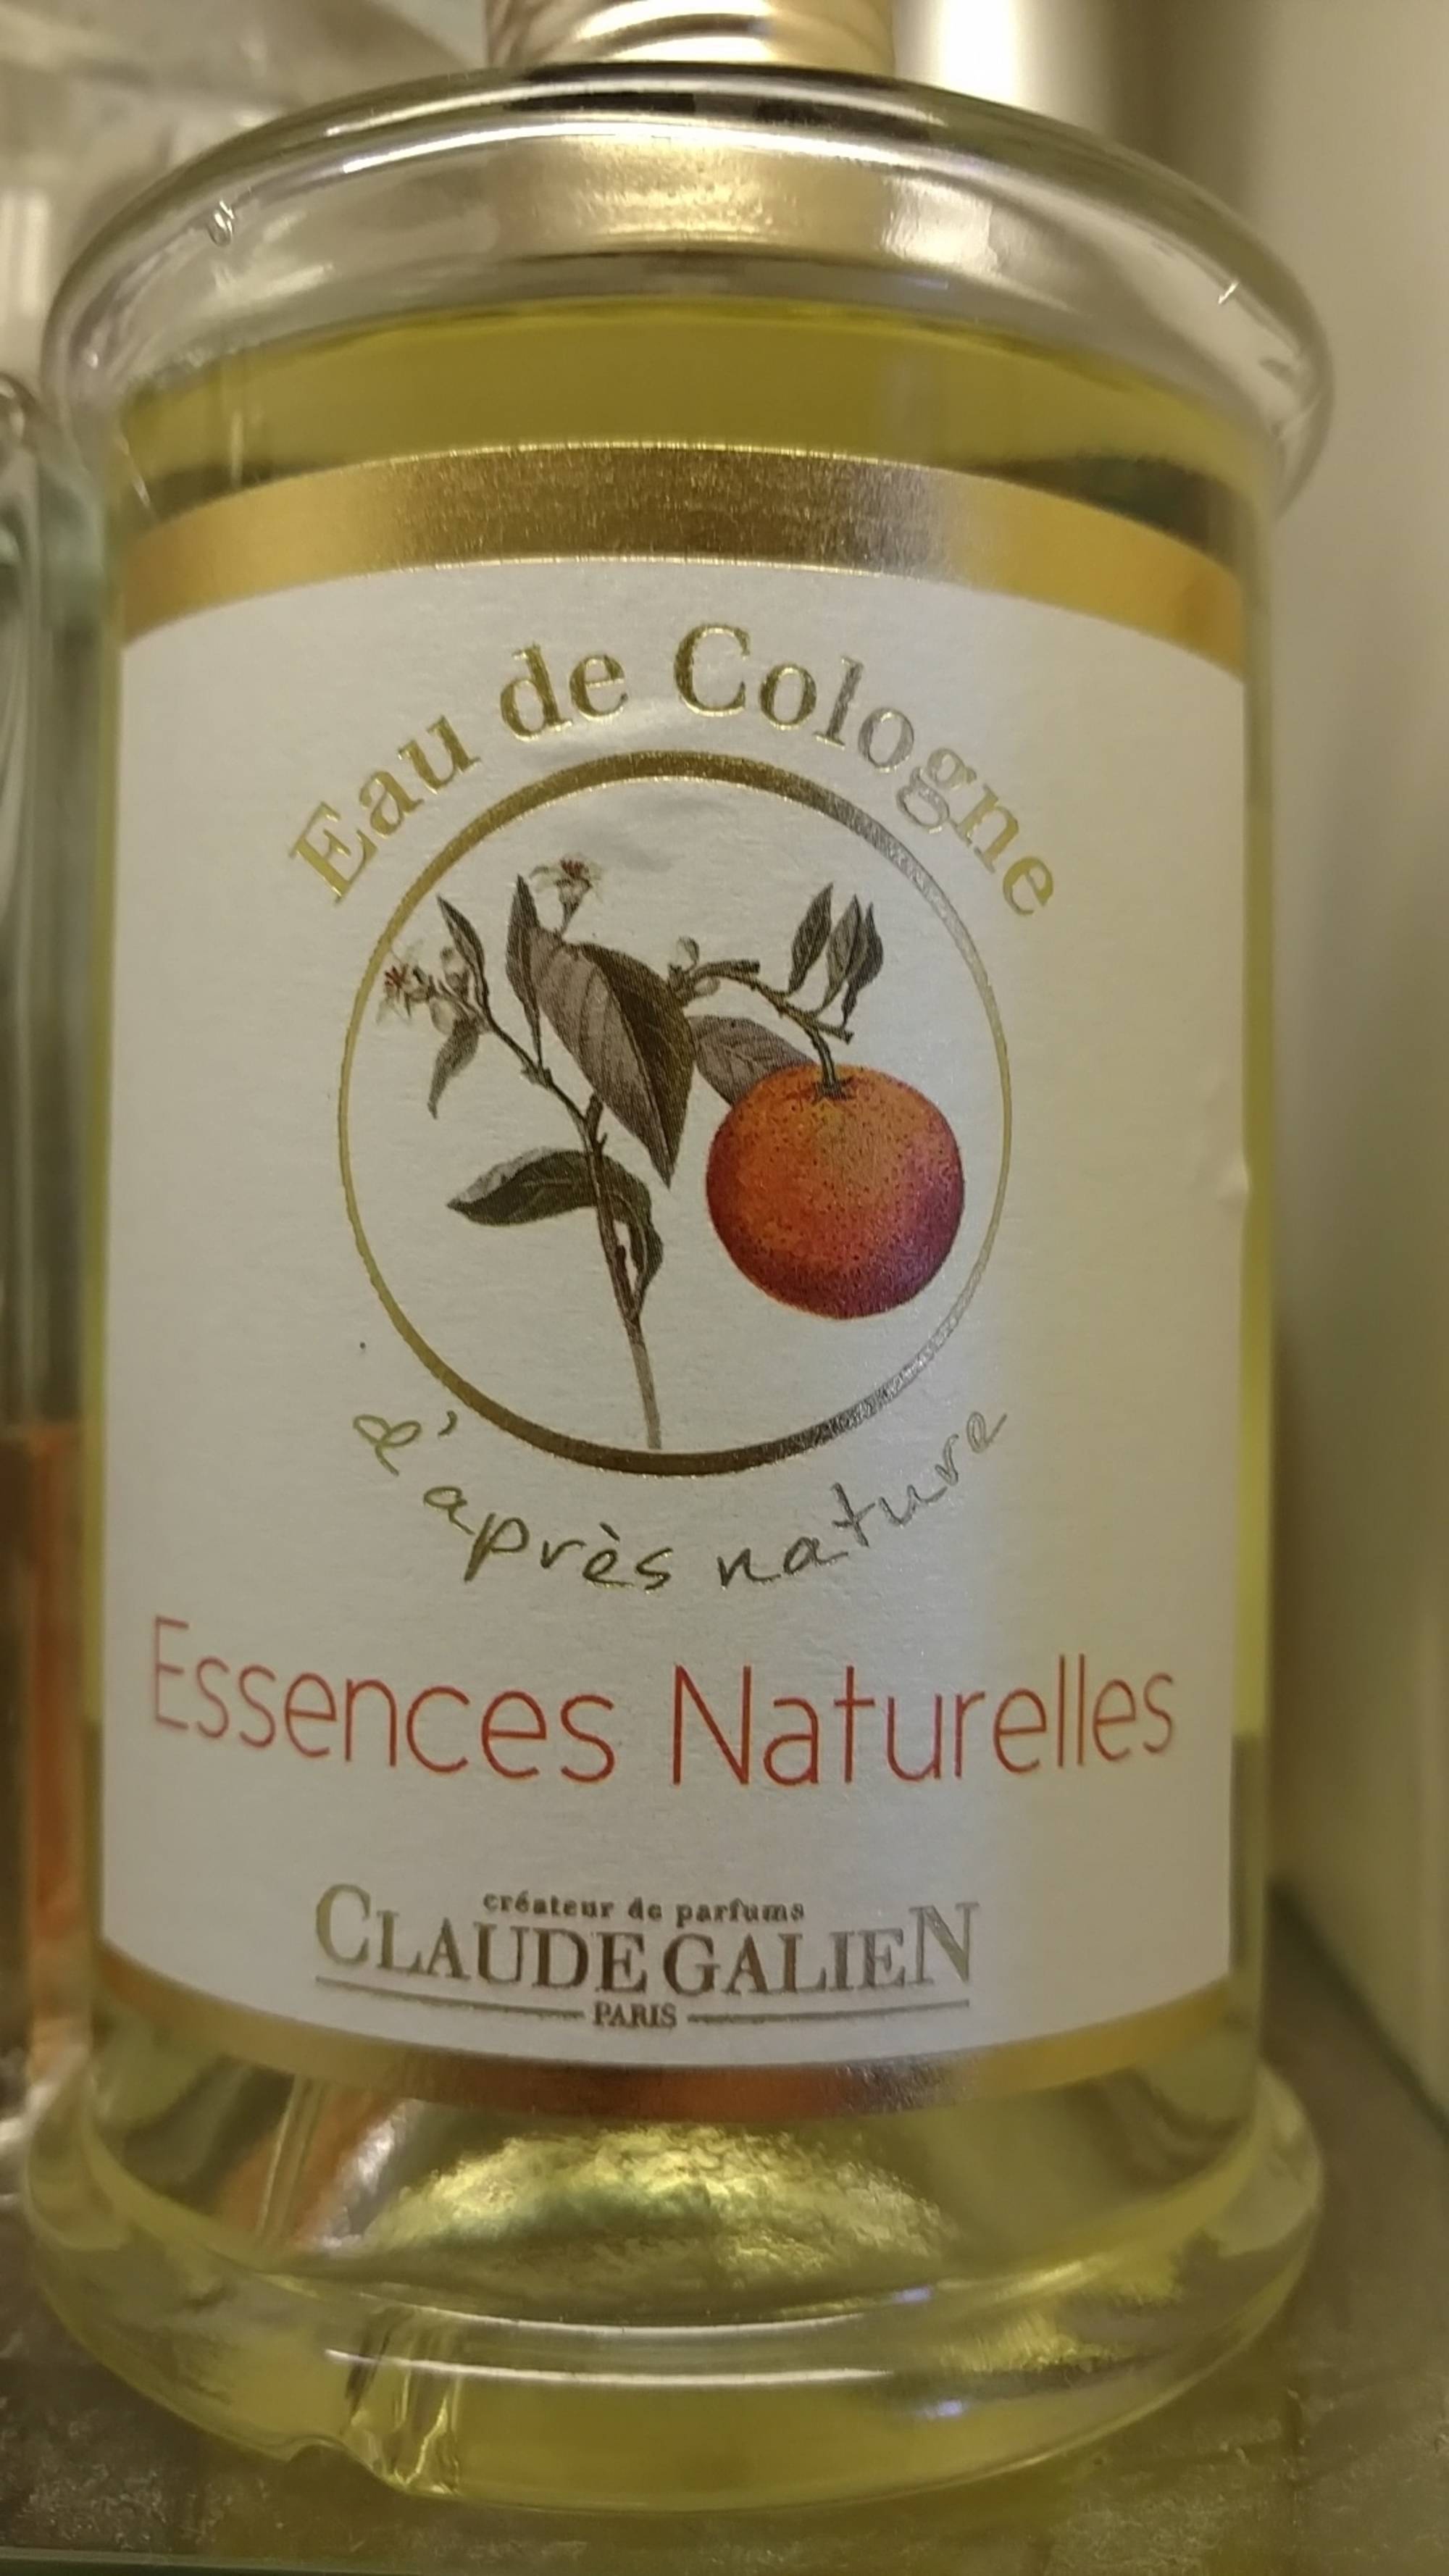 CLAUDE GALIEN - Essence naturelles - Eau de Cologne